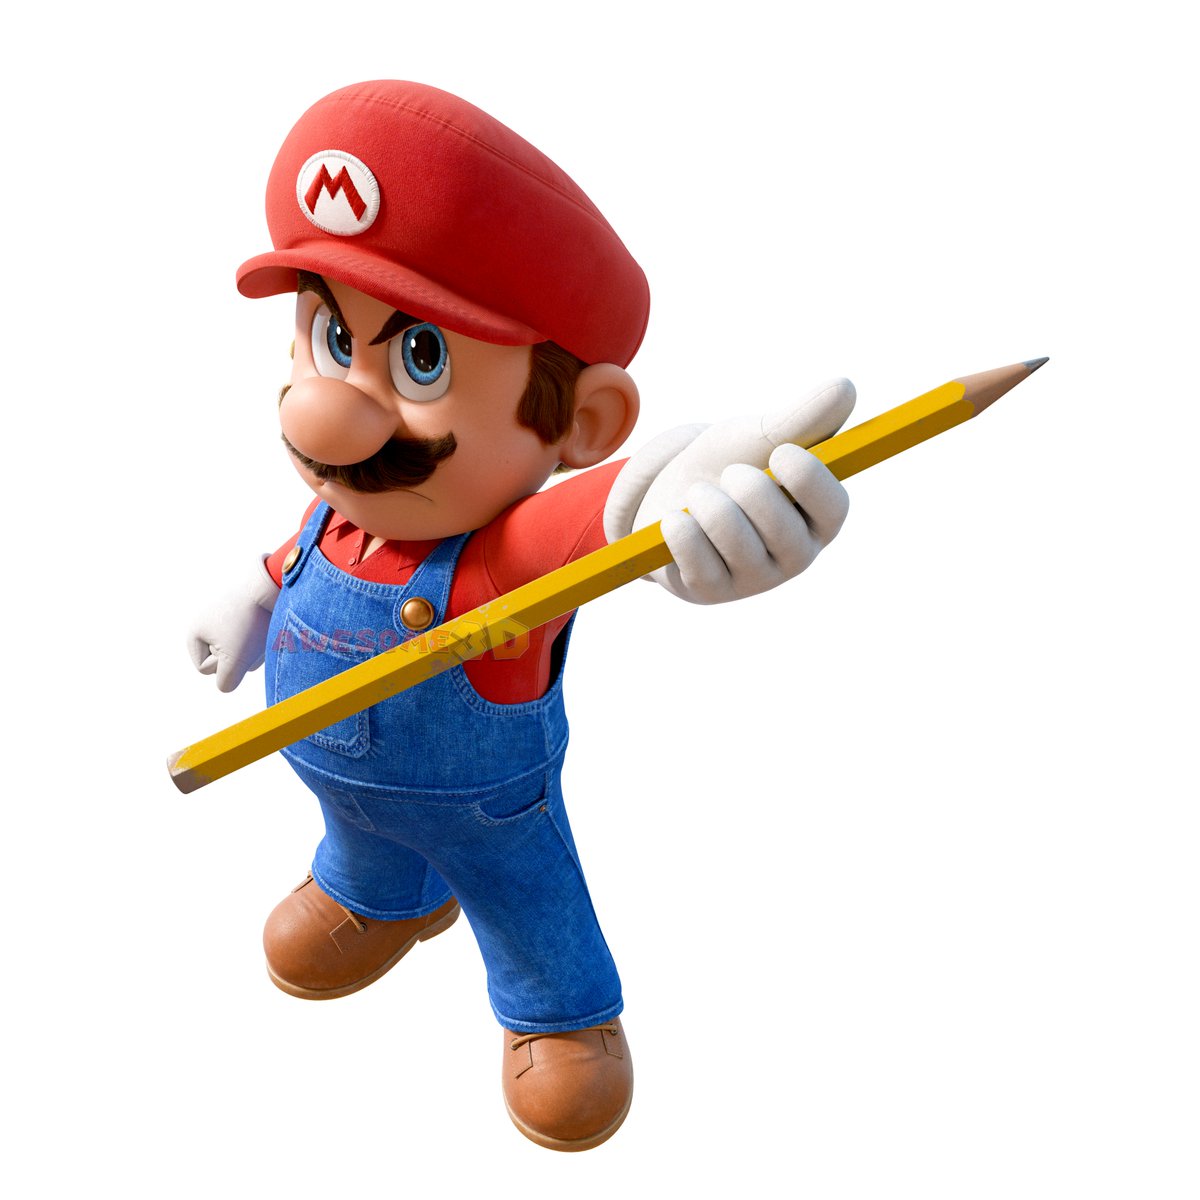 ooOOOooOOOoo scary pencil! Scared, AI bros? #b3d #Mario